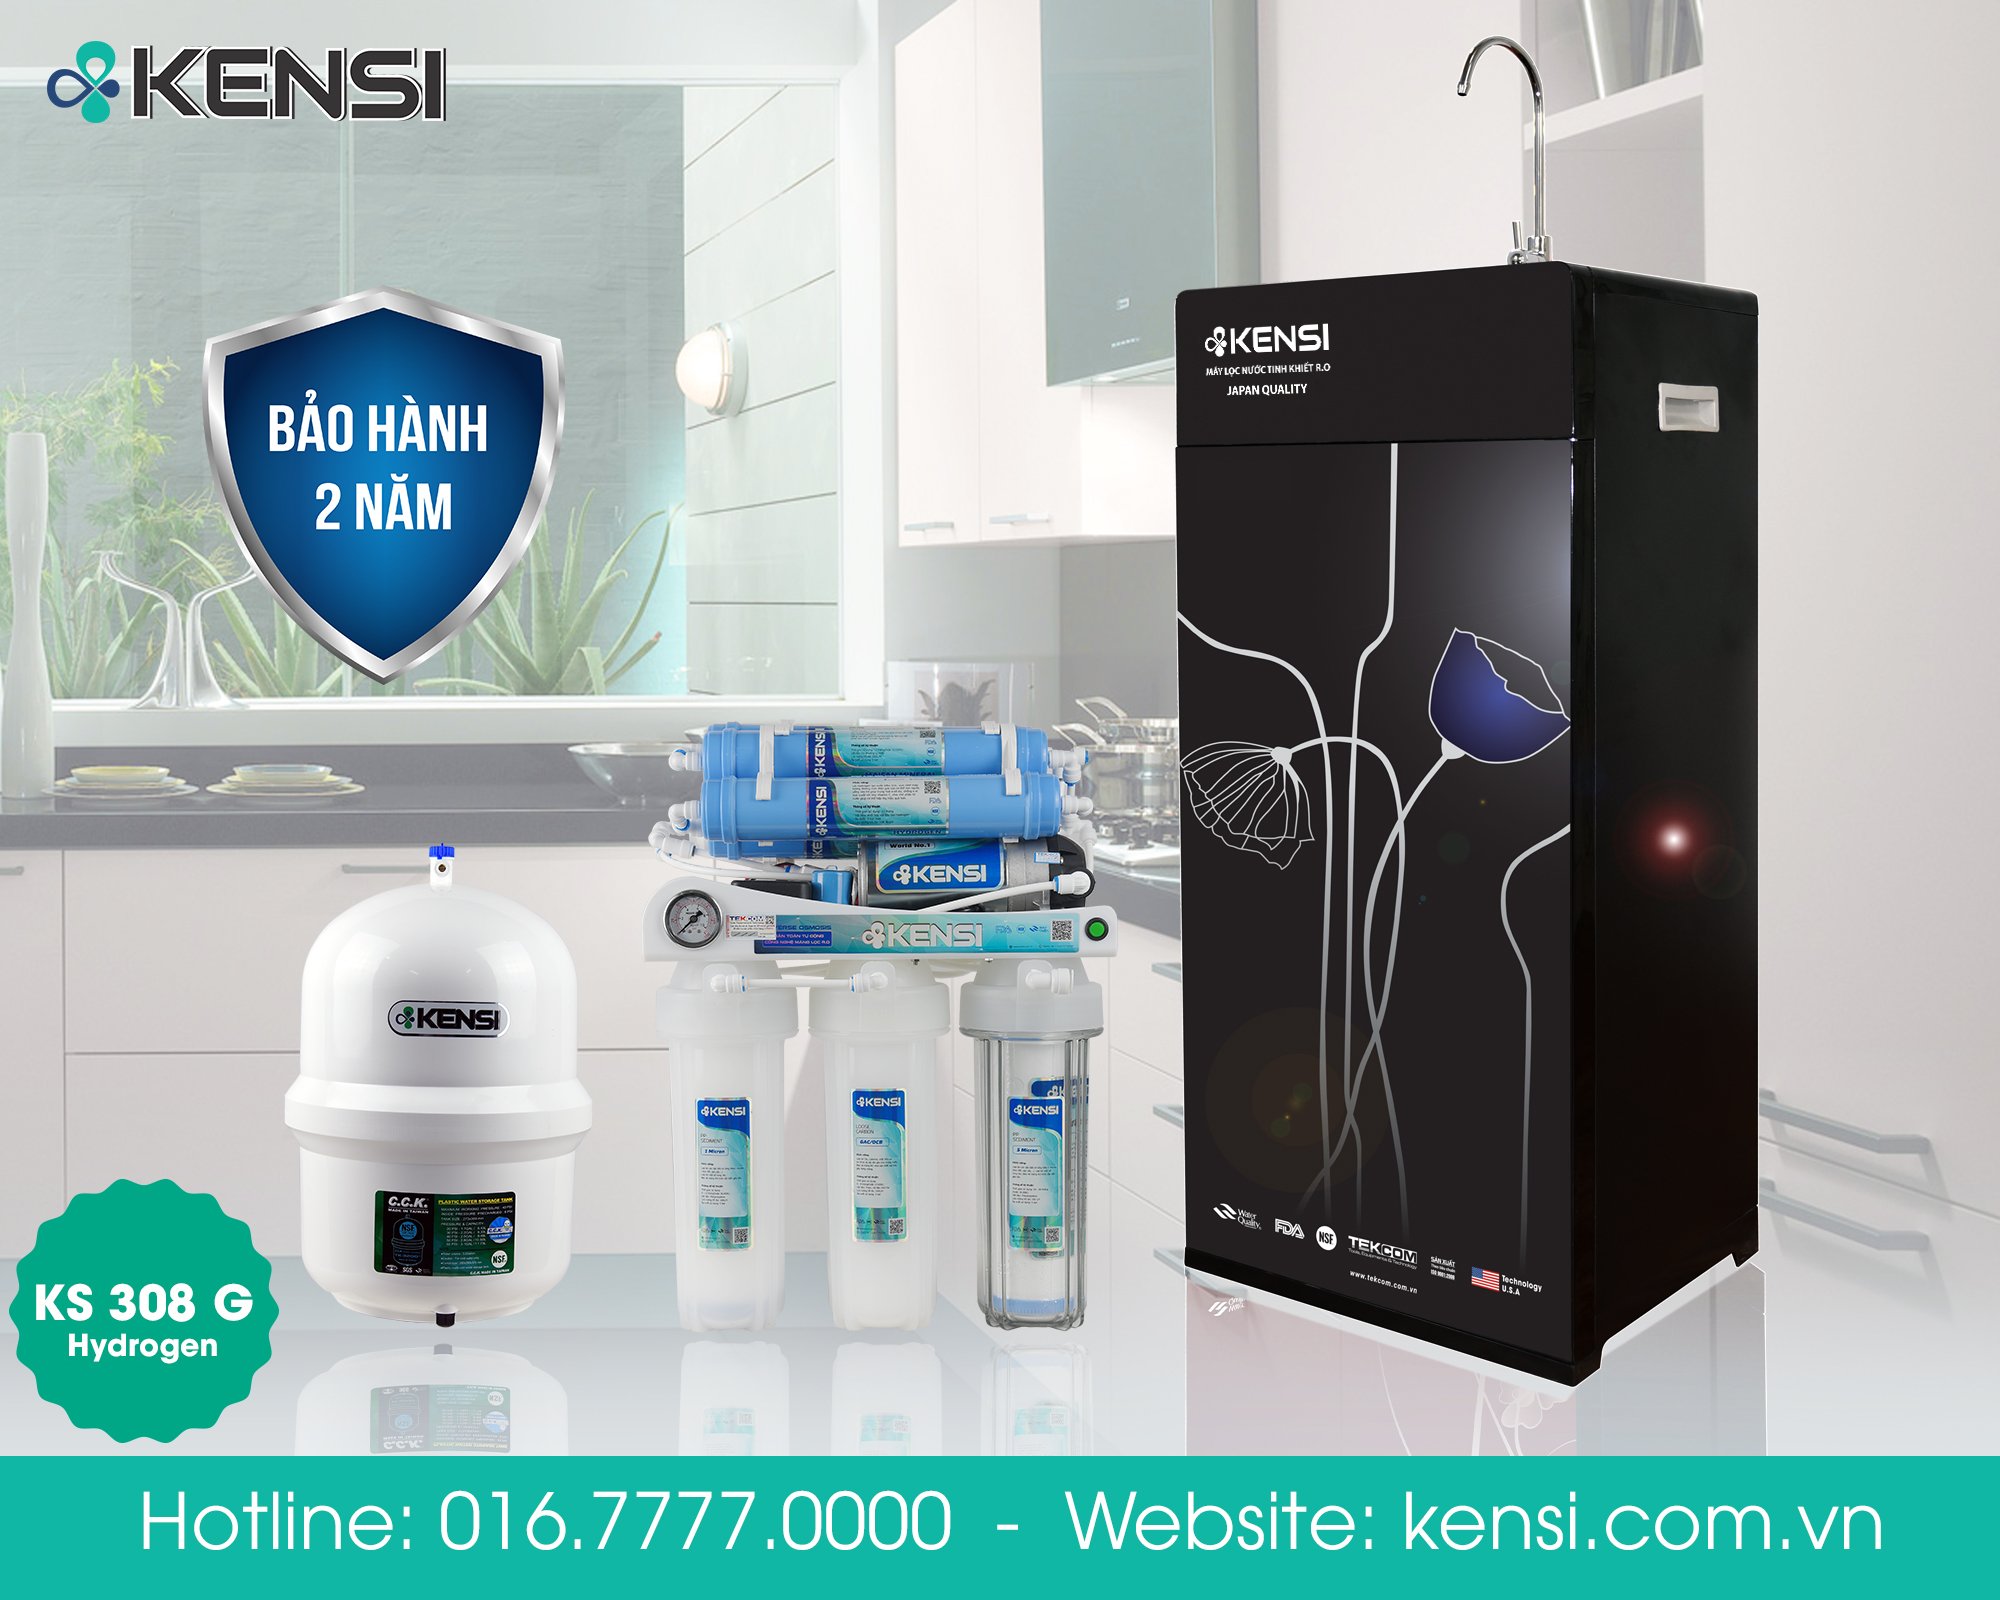 Lọc nước tinh khiết KS 308G -Hydrogen đảm bảo sức khỏe cho mọi nhà